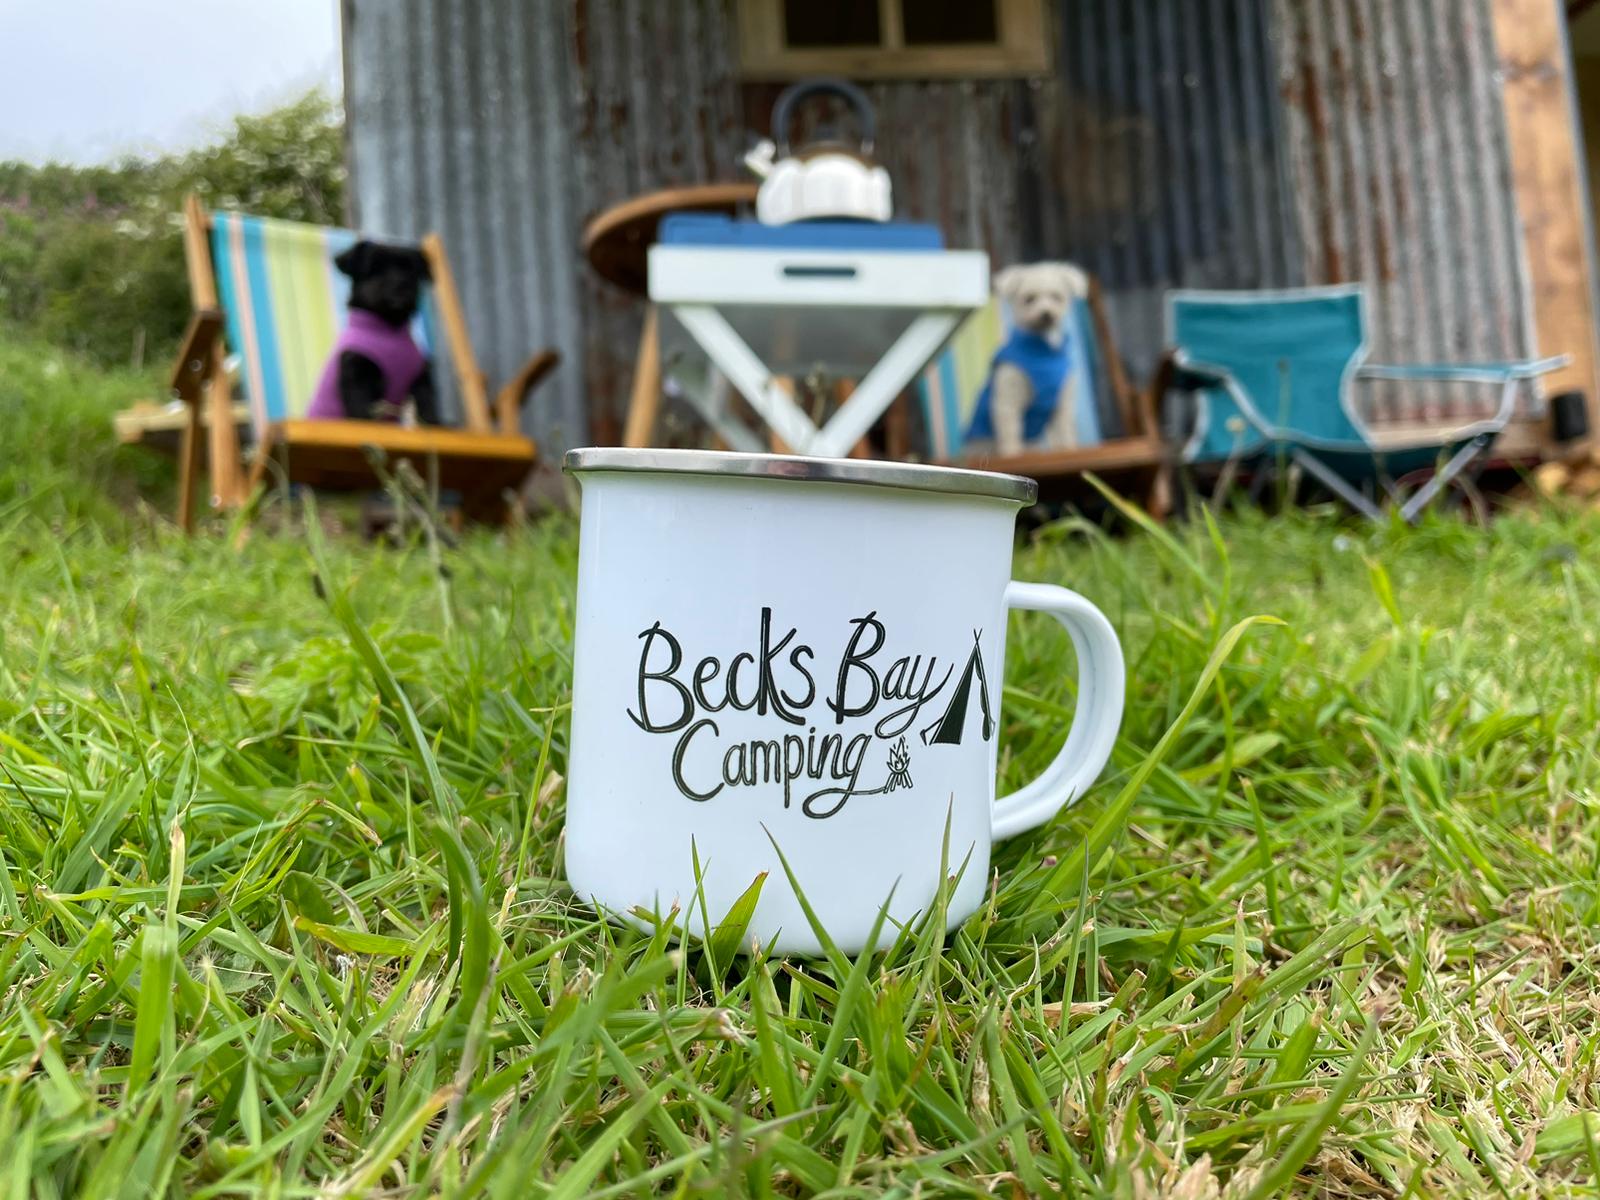 Becks Bay Camping, Tenby